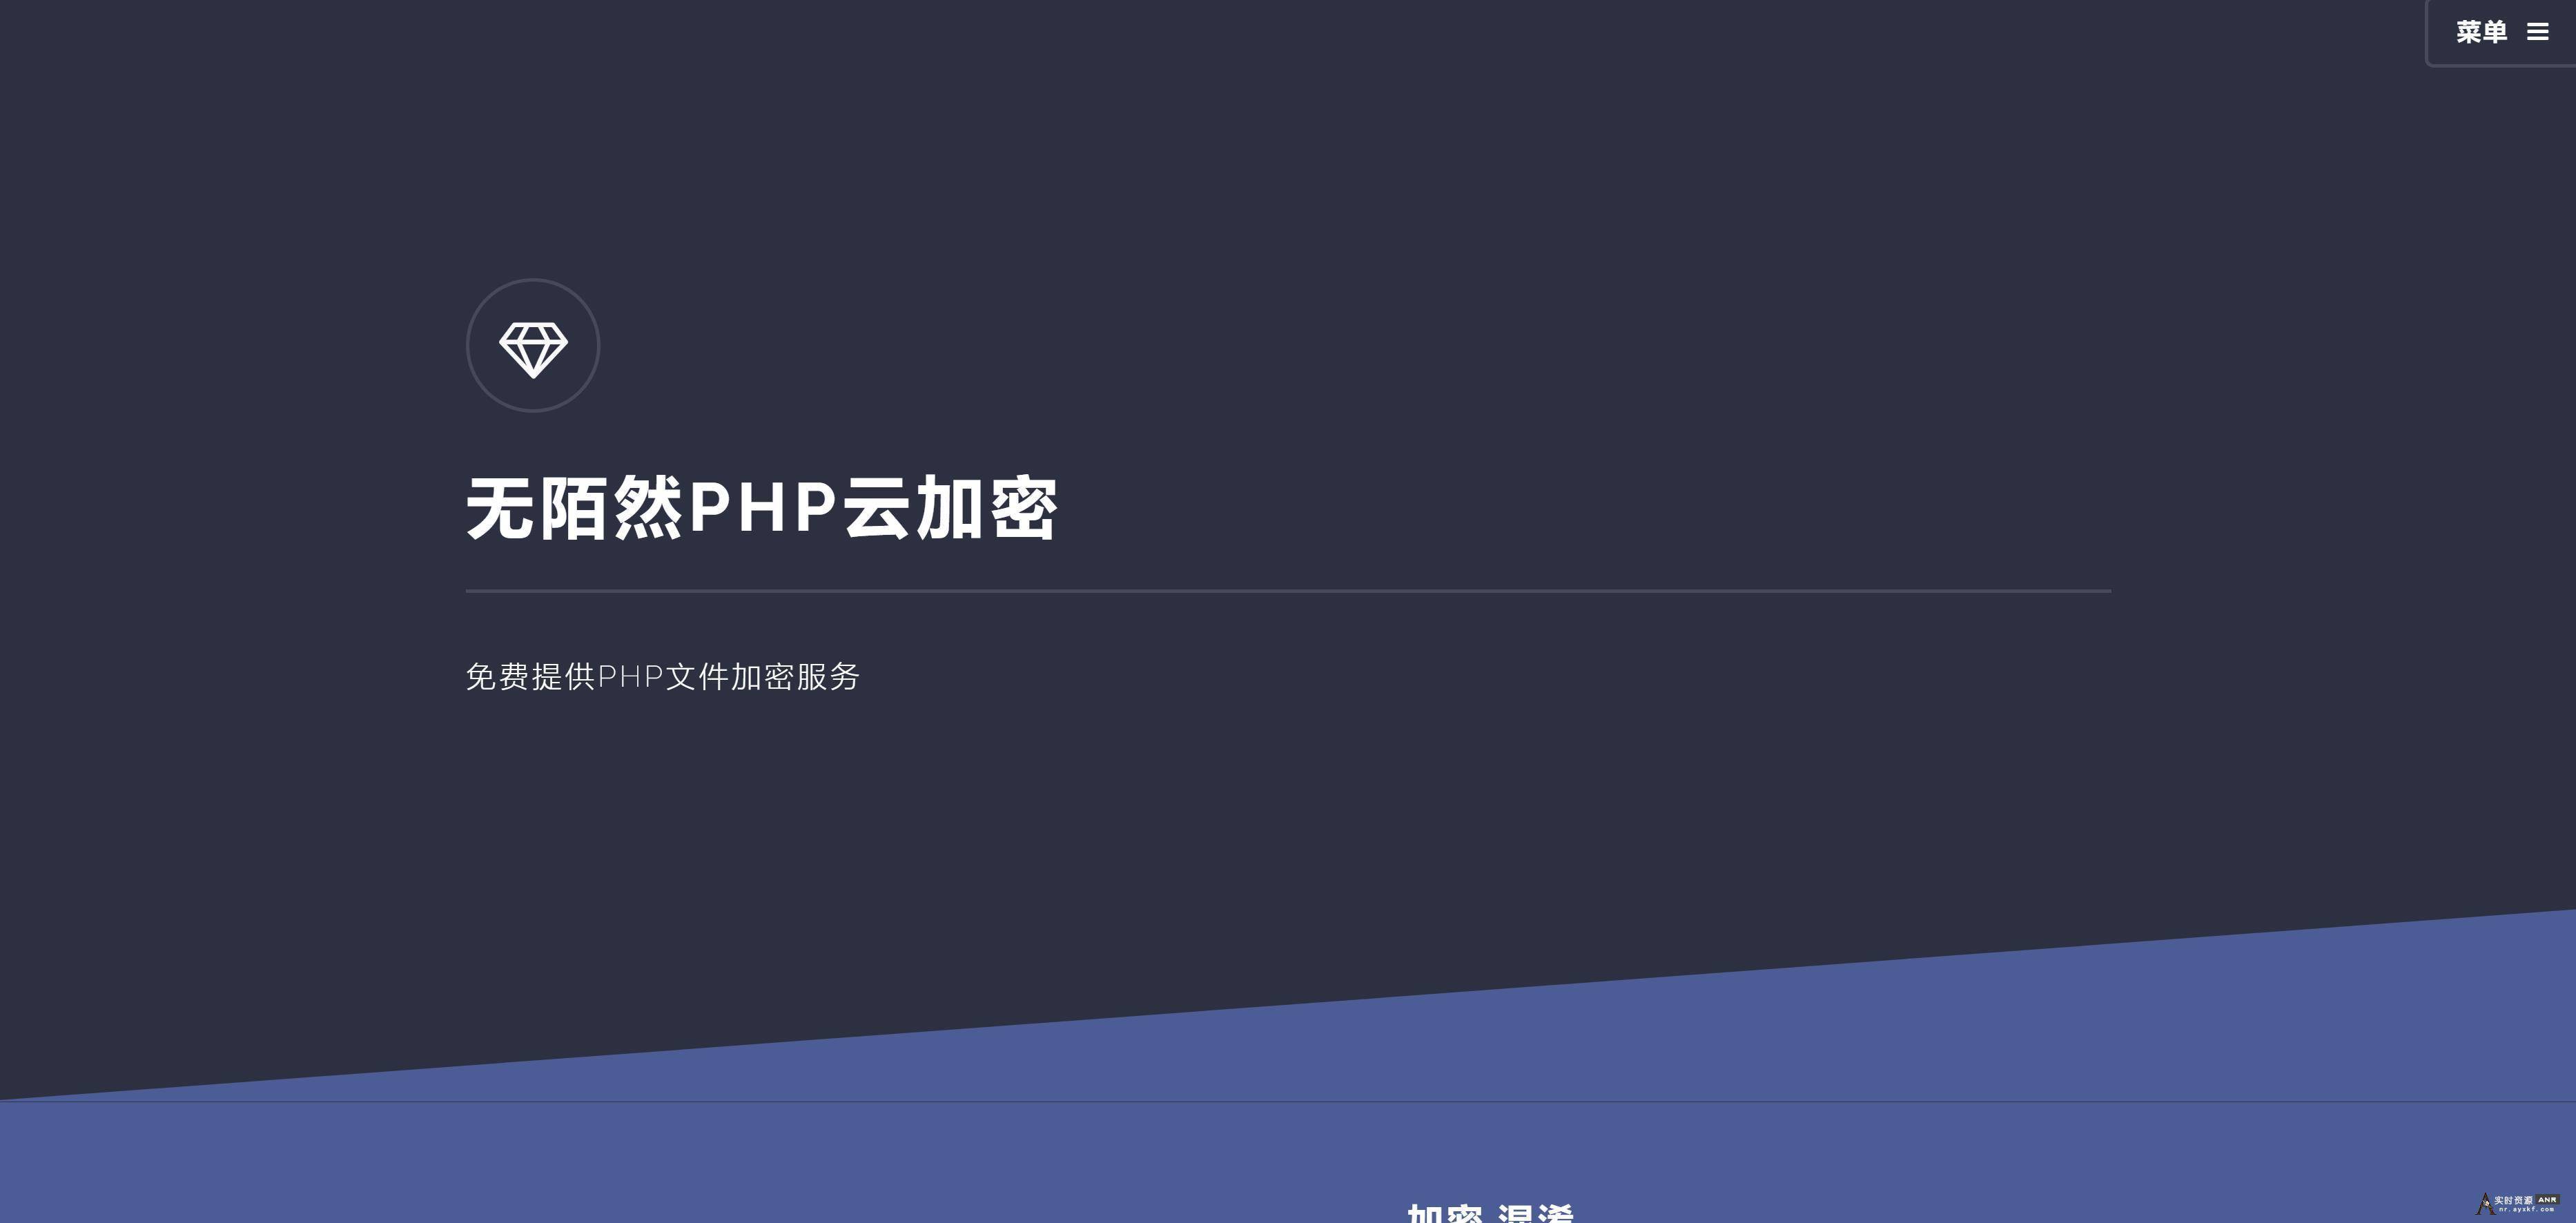 2019最新可用的PHP云加密平台免费分享 网络资源 图3张